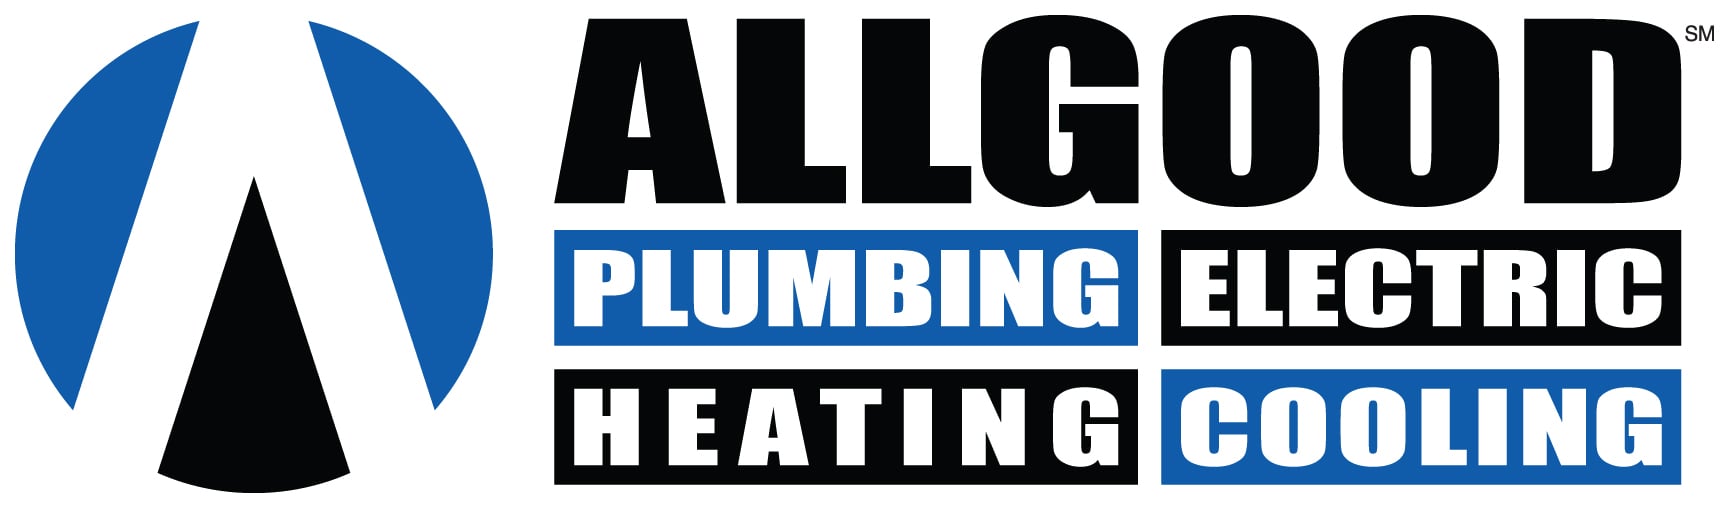 Allgood Plumbing, Electric, Heating & Cooling Logo